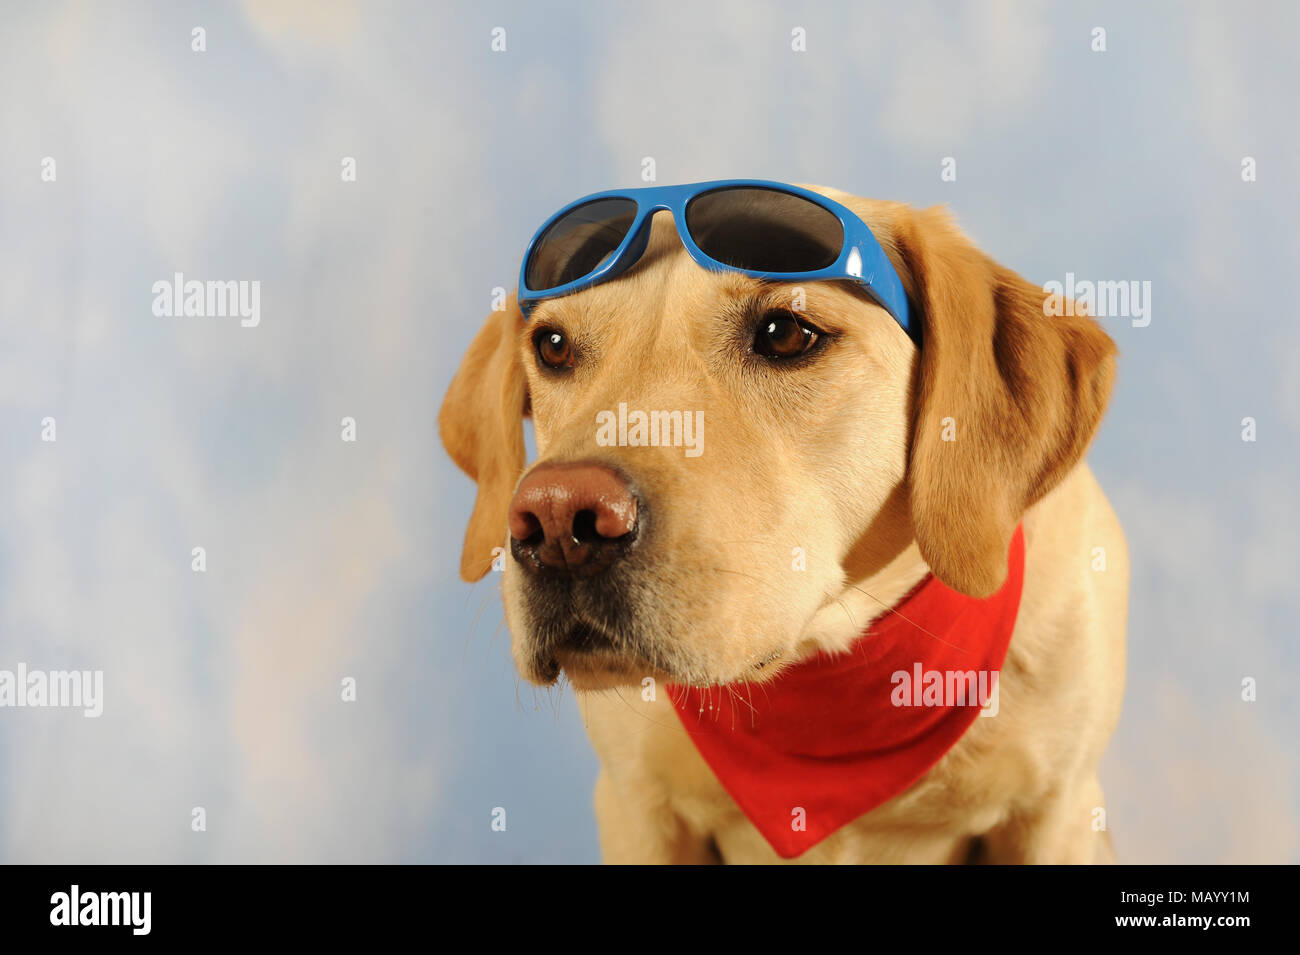 Labrador Retriever, homme, jaune, avec foulard et lunettes, animal portrait, studio shot Banque D'Images